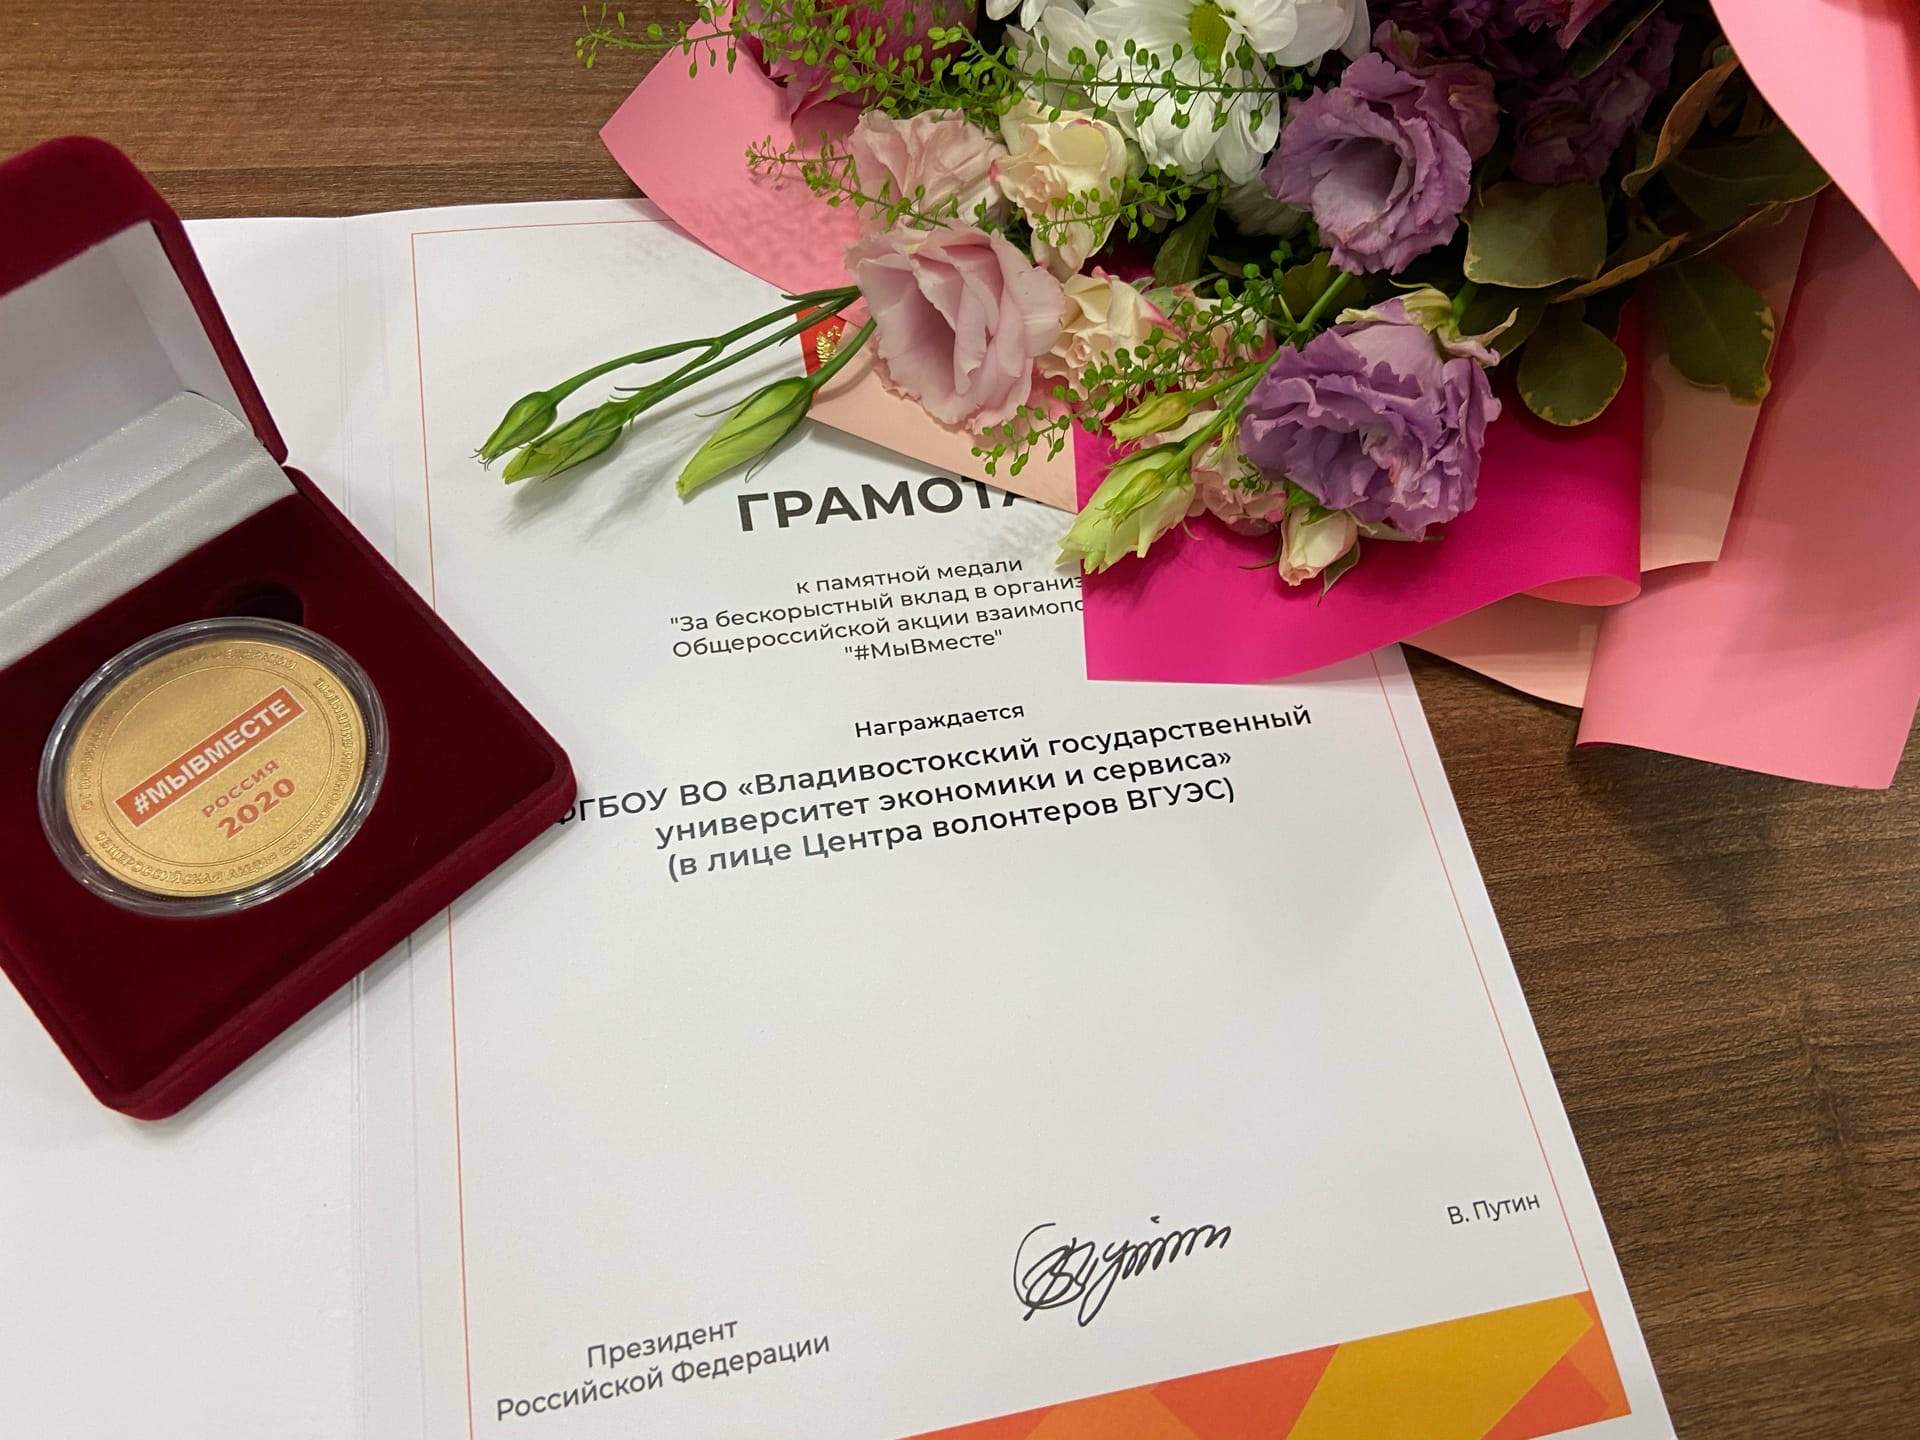 Центр волонтеров ВГУЭС награжден медалью Президента РФ